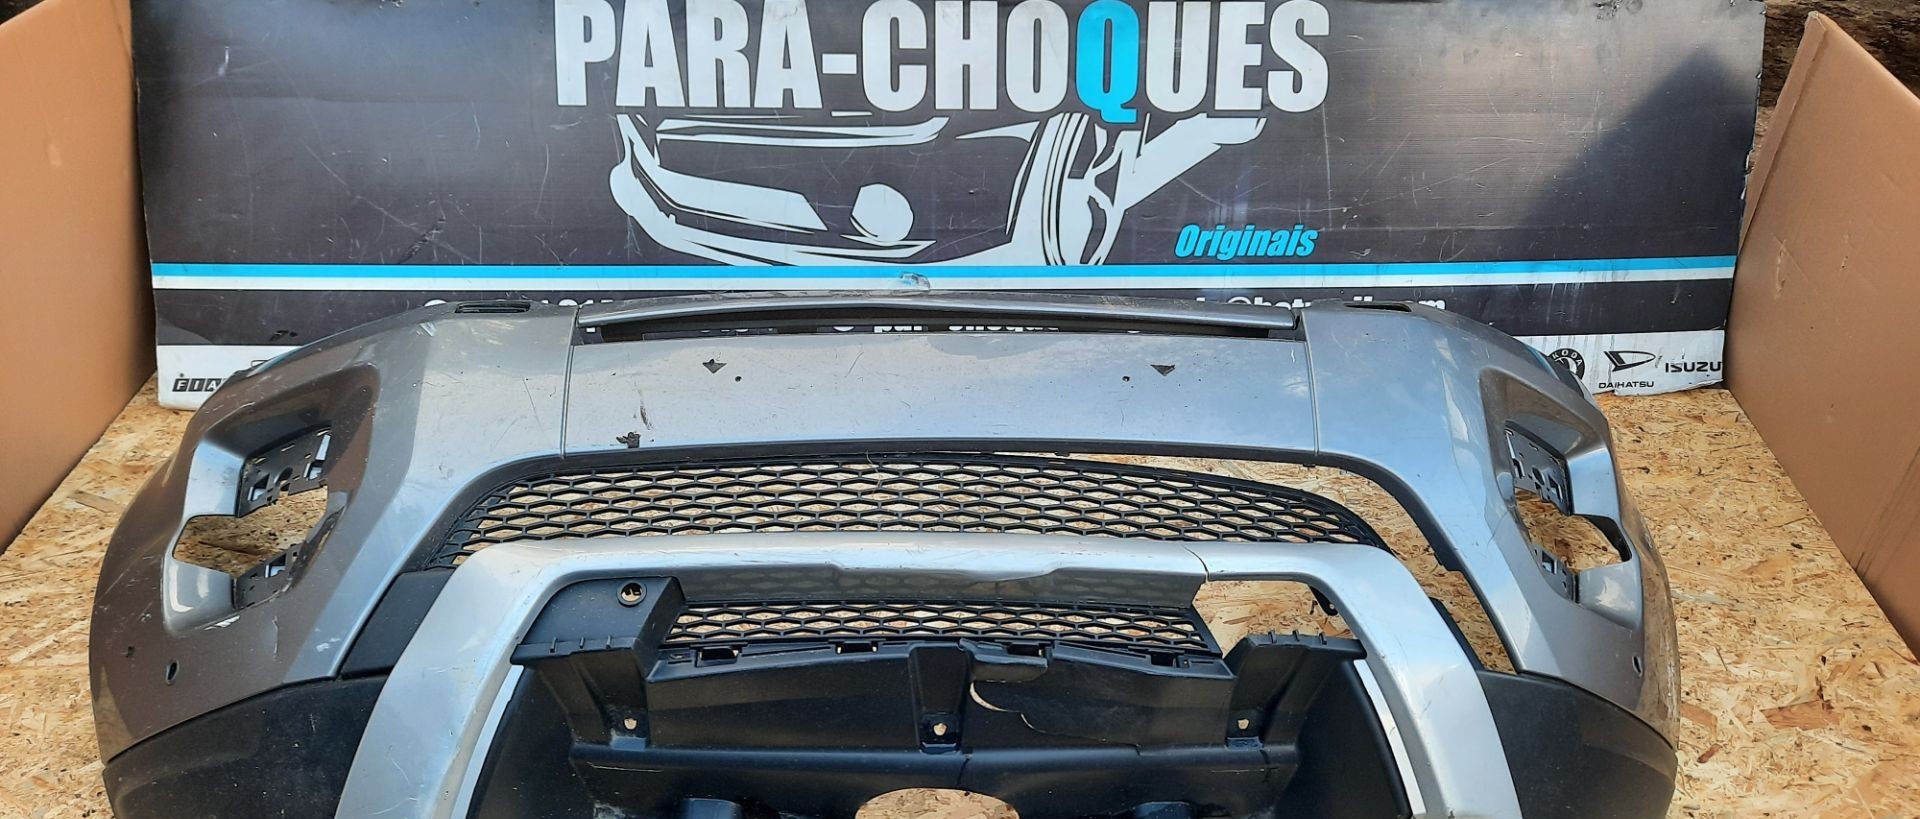 Peças - Parachoques Range Rover Evoque Sport